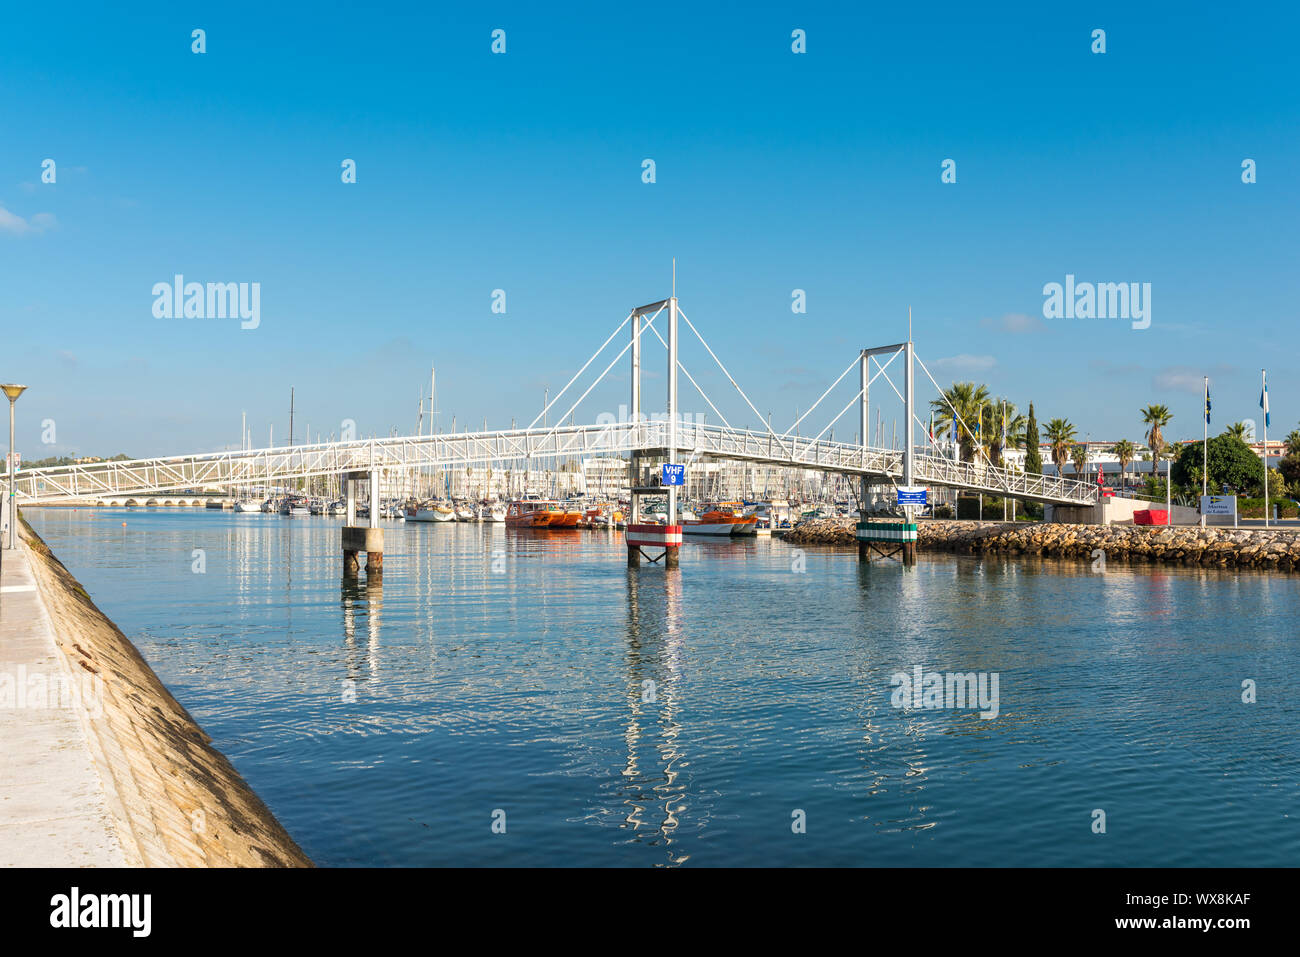 Der Steg in der Marina von Lagos ist als moderne Zugbrücke ein Wahrzeichen im Hafen Stockfoto